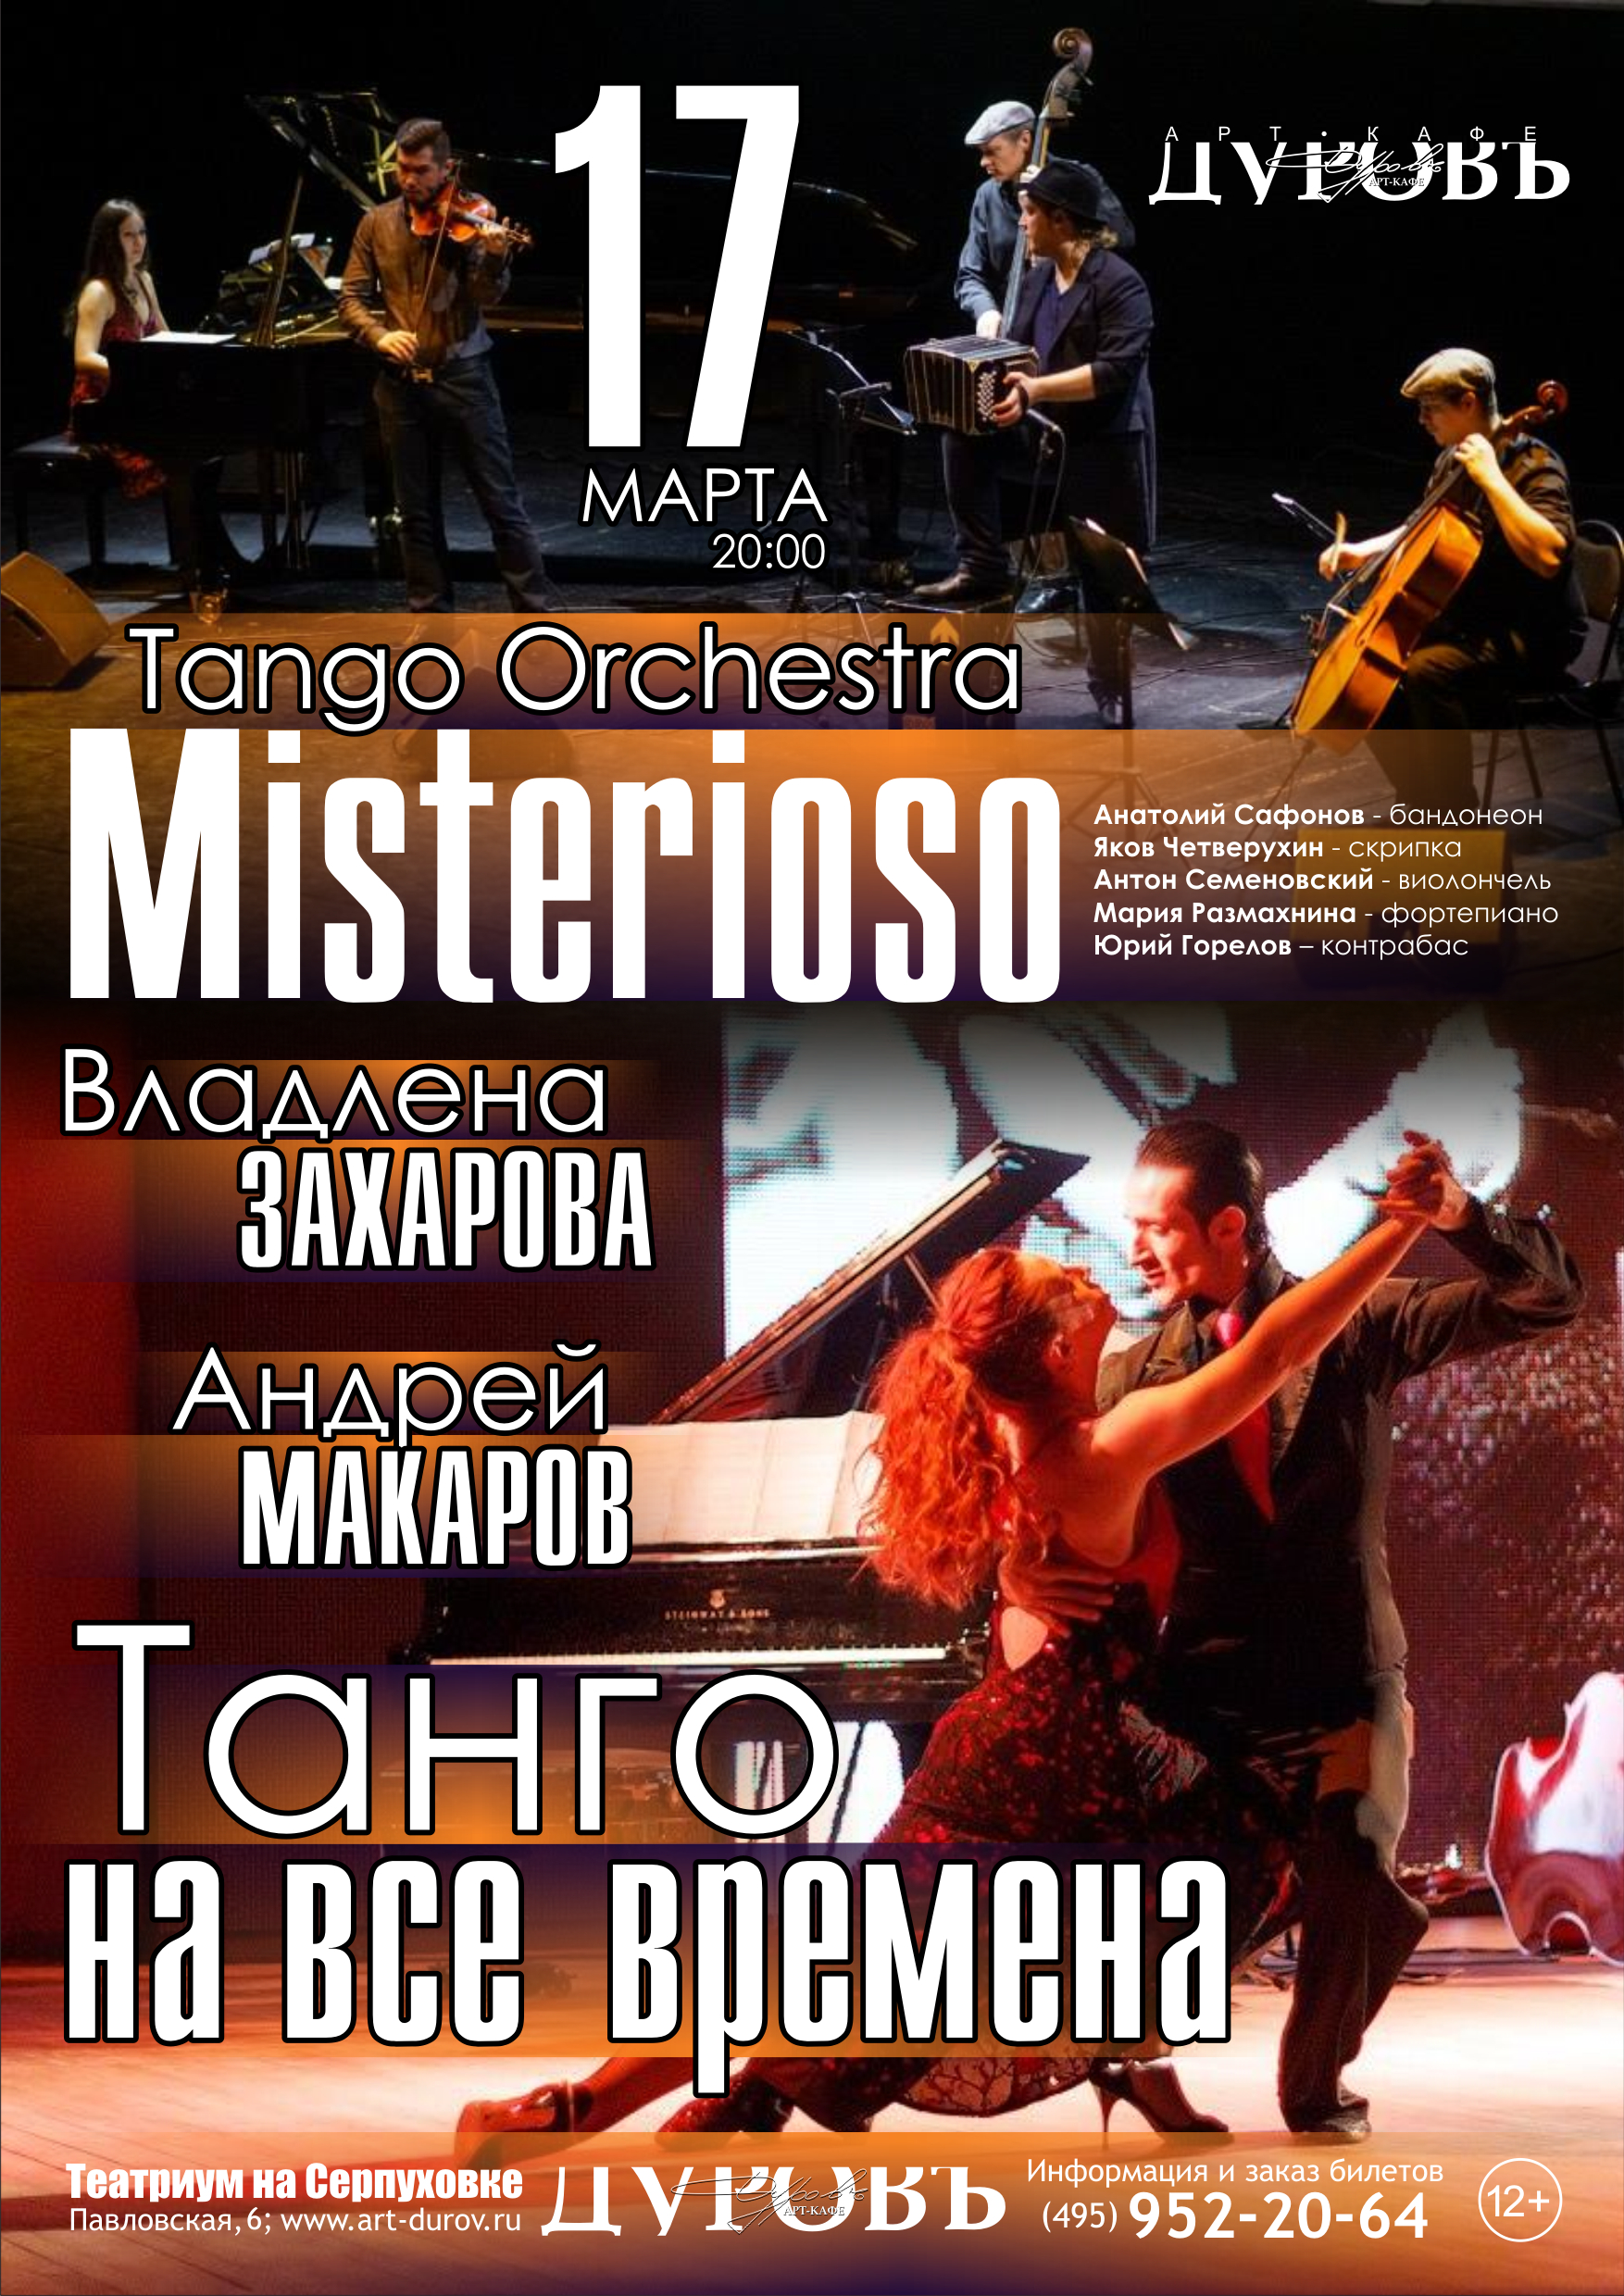 Tango orchestra. Танго оркестр. Абаканский симфонический оркестр танго. Афиша Соло танго оркестра. Эль качеваче танго оркестр.